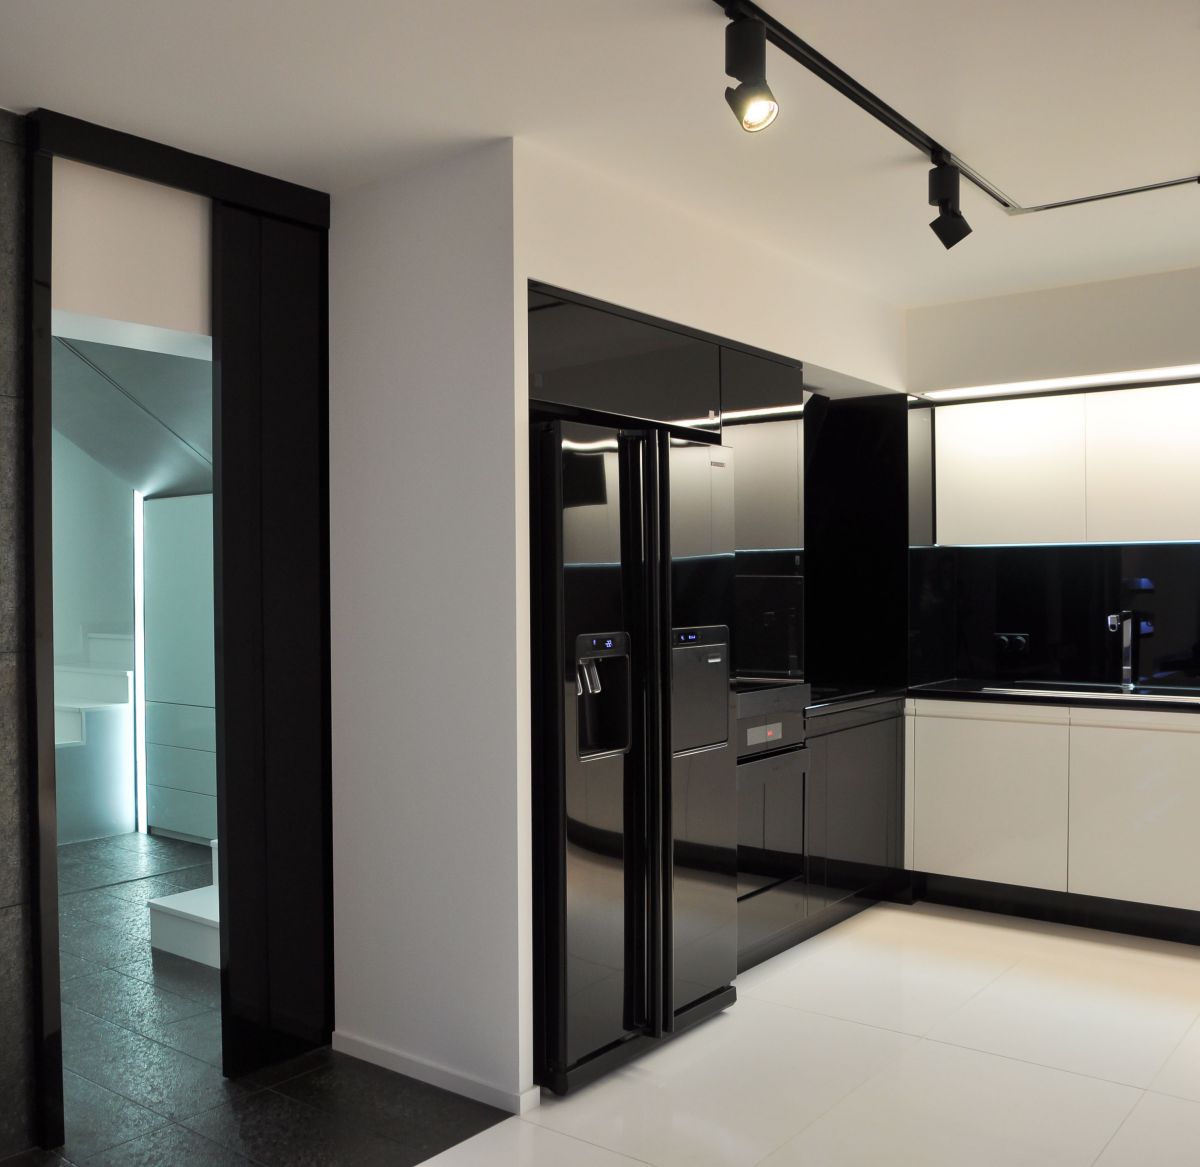 Kitchen, Black Fridge Freezer, Apartment Interior by Jovo Bozhinovski